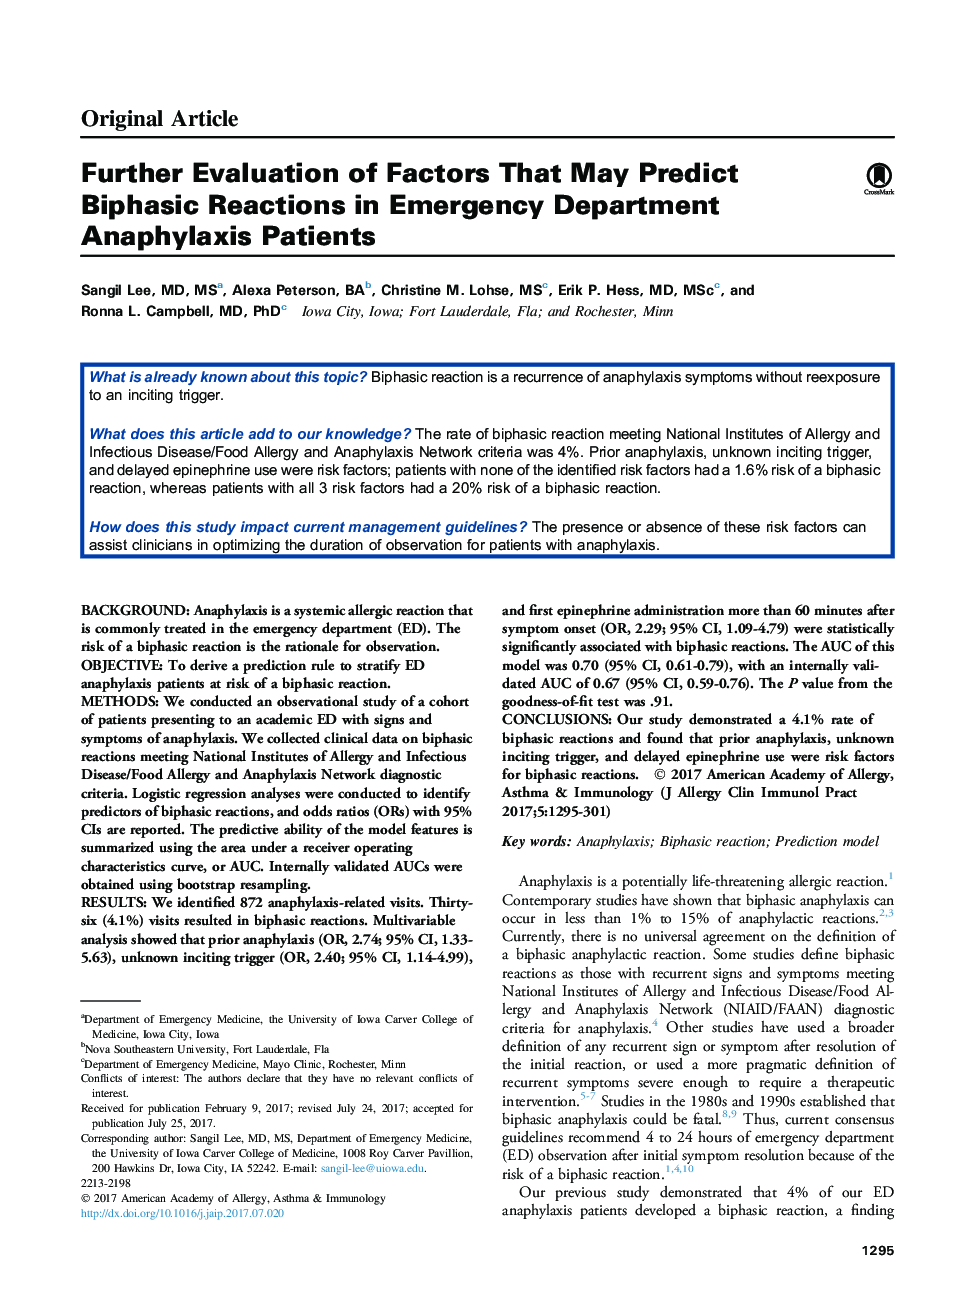 ارزیابی بیشتر عوامل مؤثر در پیشگیری از واکنش های دو طرفه در بیماران آنافیلاکسی گروه اورژانس 